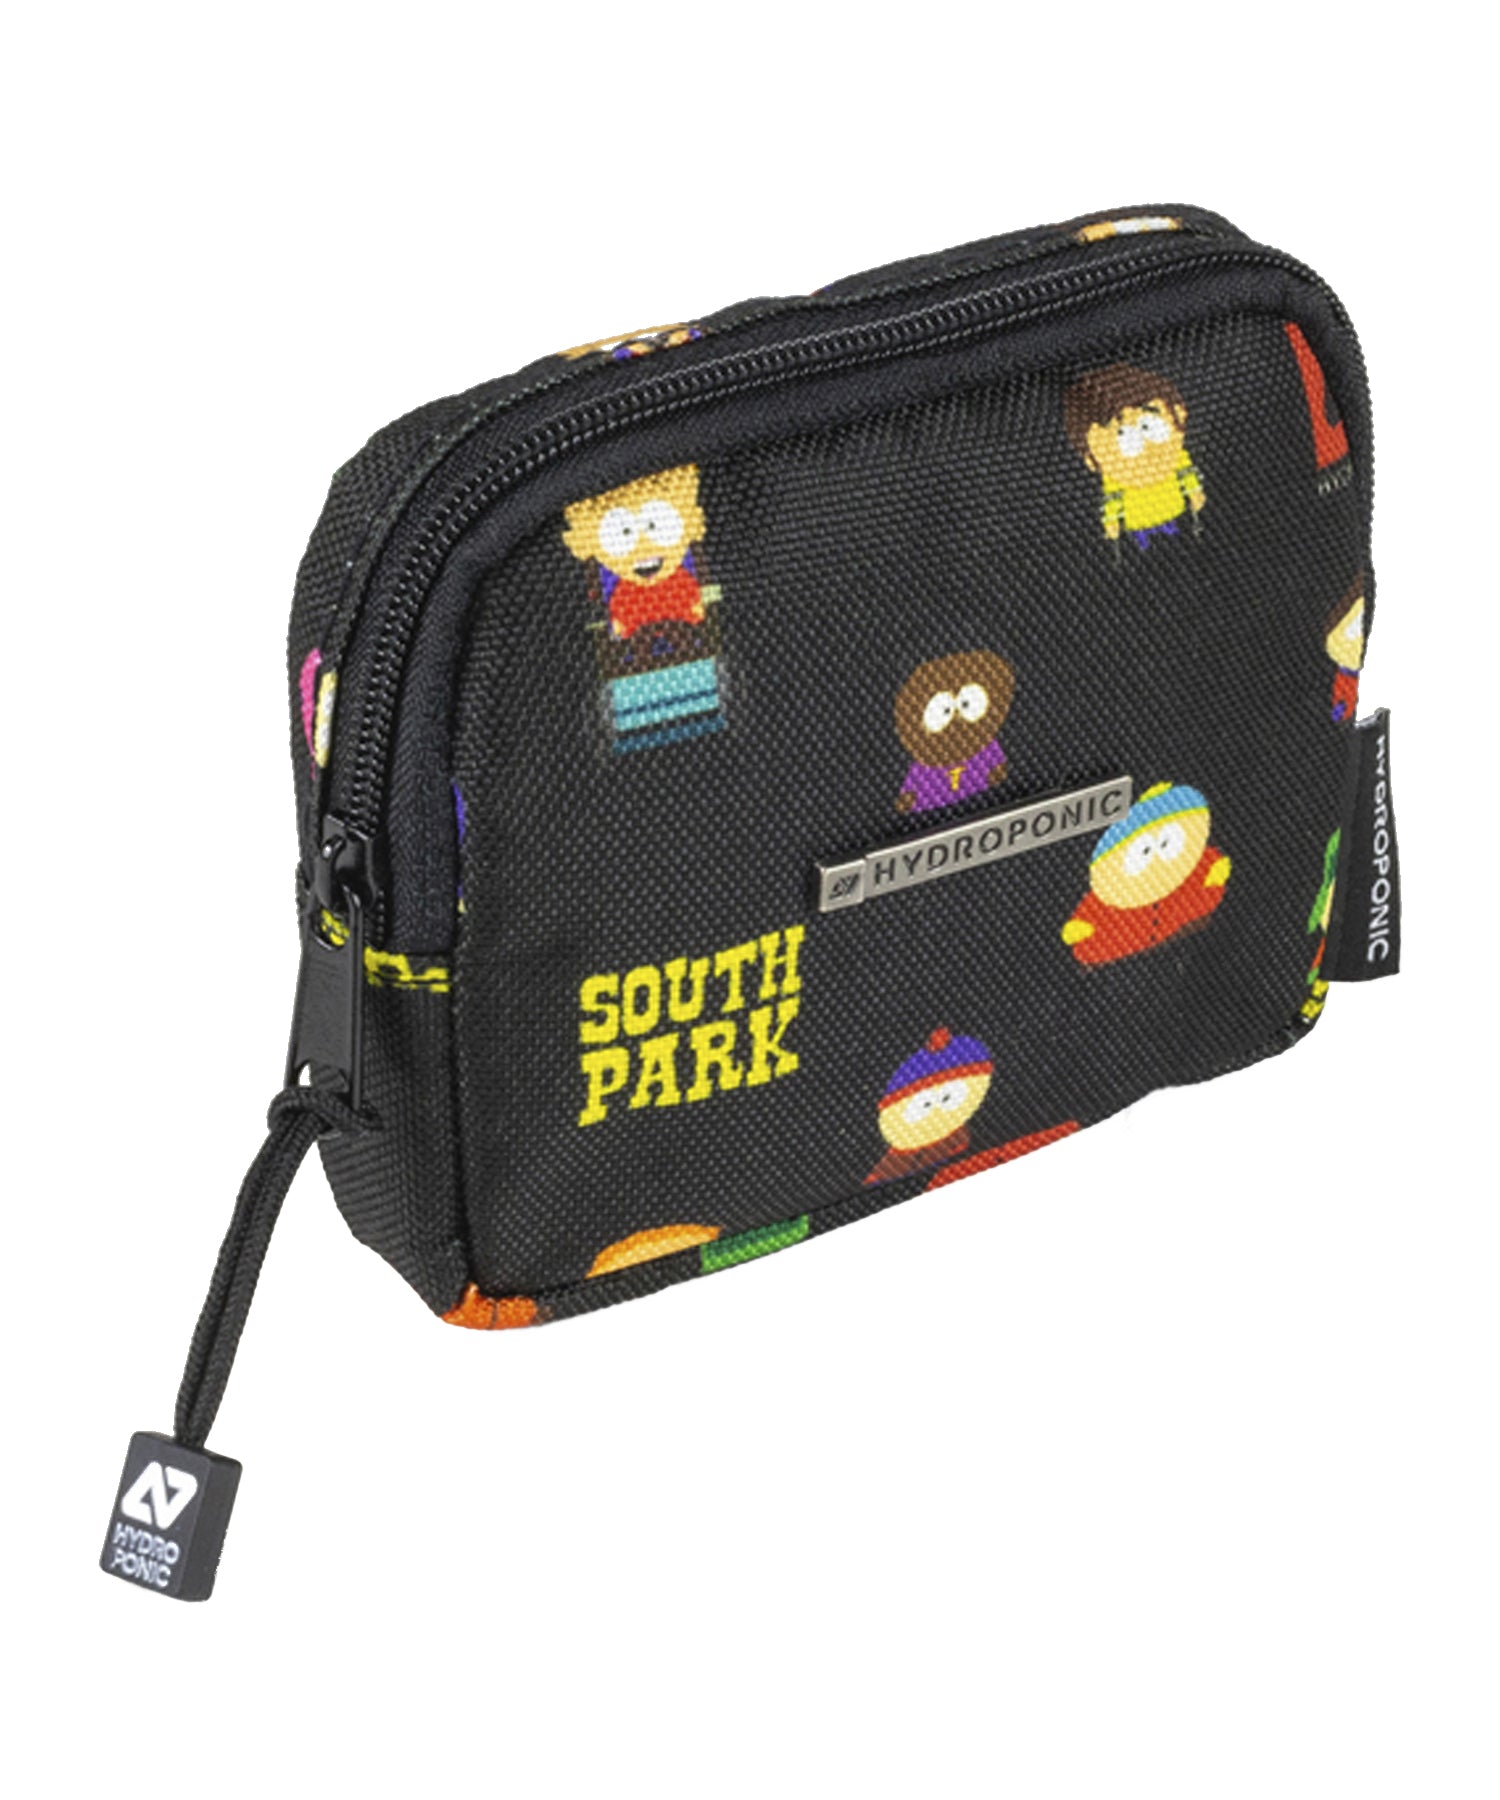 Hydroponic cartera purse colaboración con south park de color negro y dibujos de los personajes de south park.